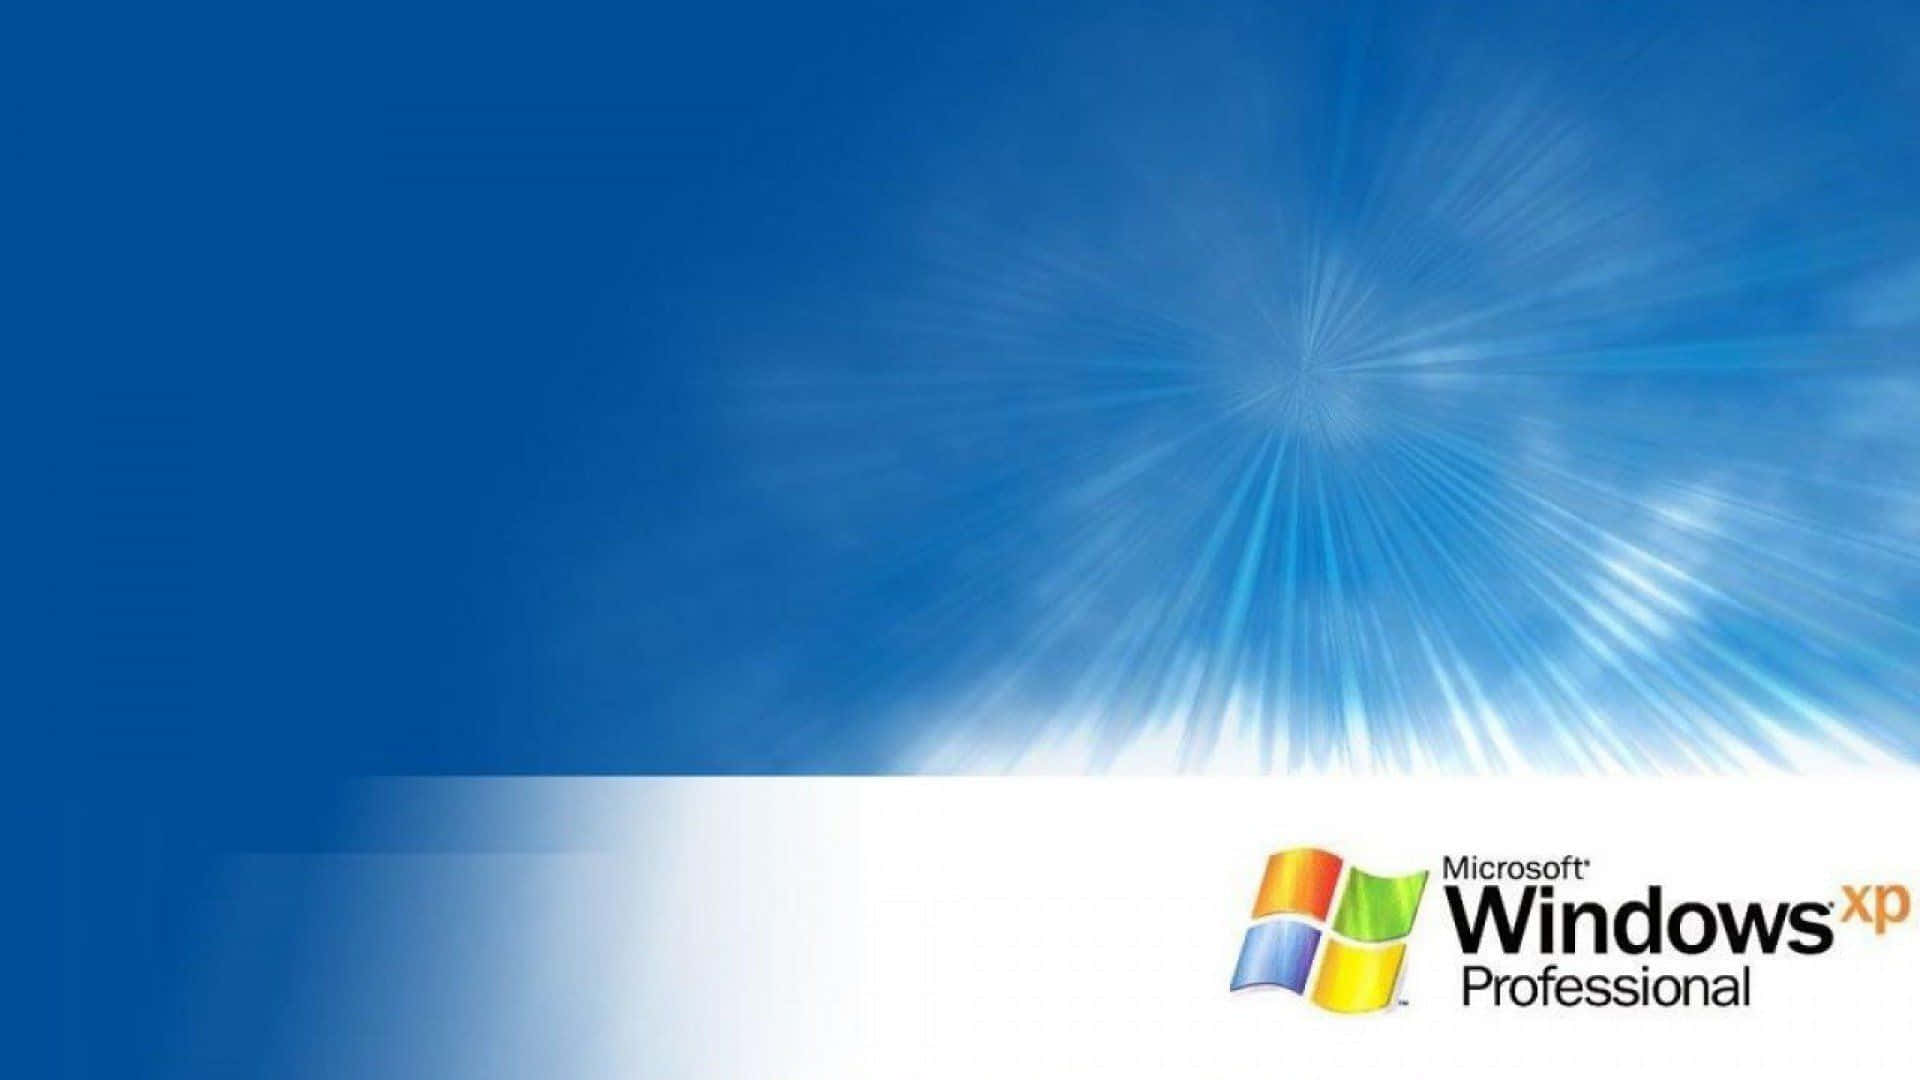 Windowsxp: Introducerar En Ny Era Inom Datoranvändning.